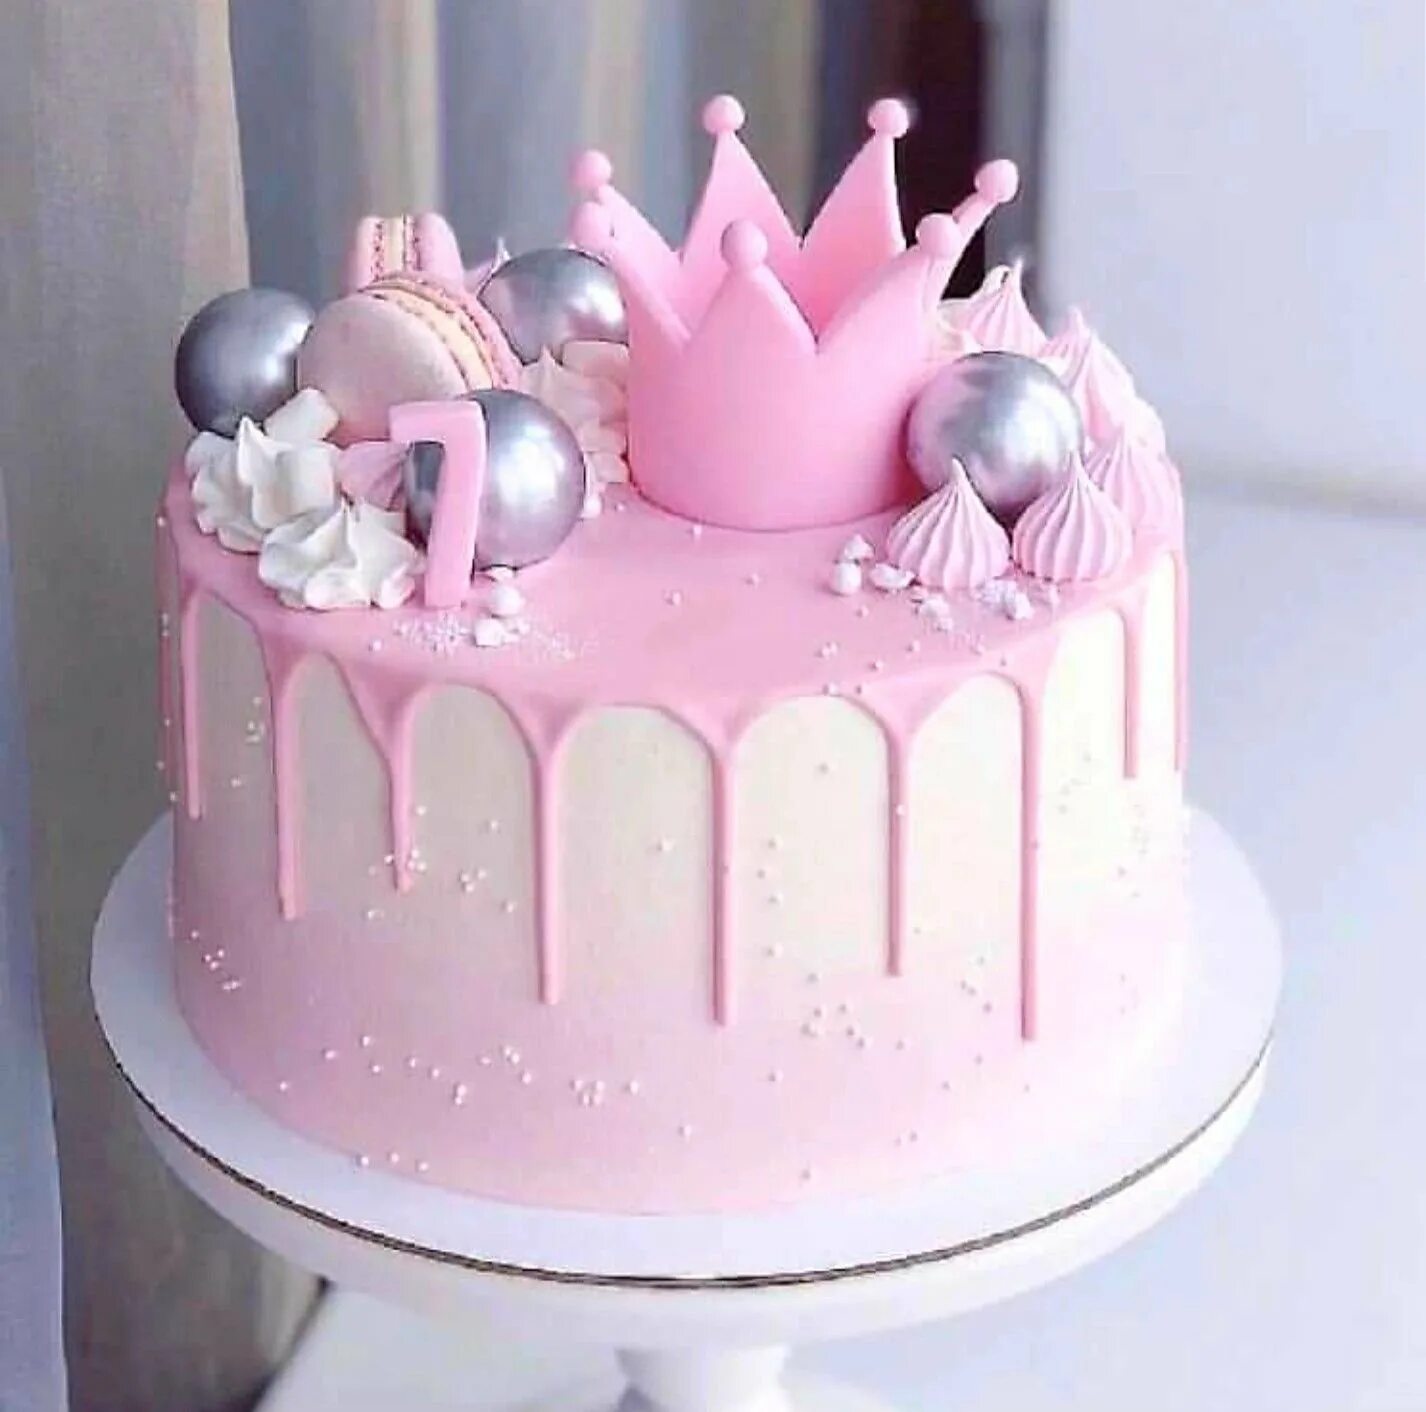 Красивый торт на рождения девочки. Торт девочка. Торт с короной для девочки. Розовый торт для девочки. Декор торта для девочки 7 лет.